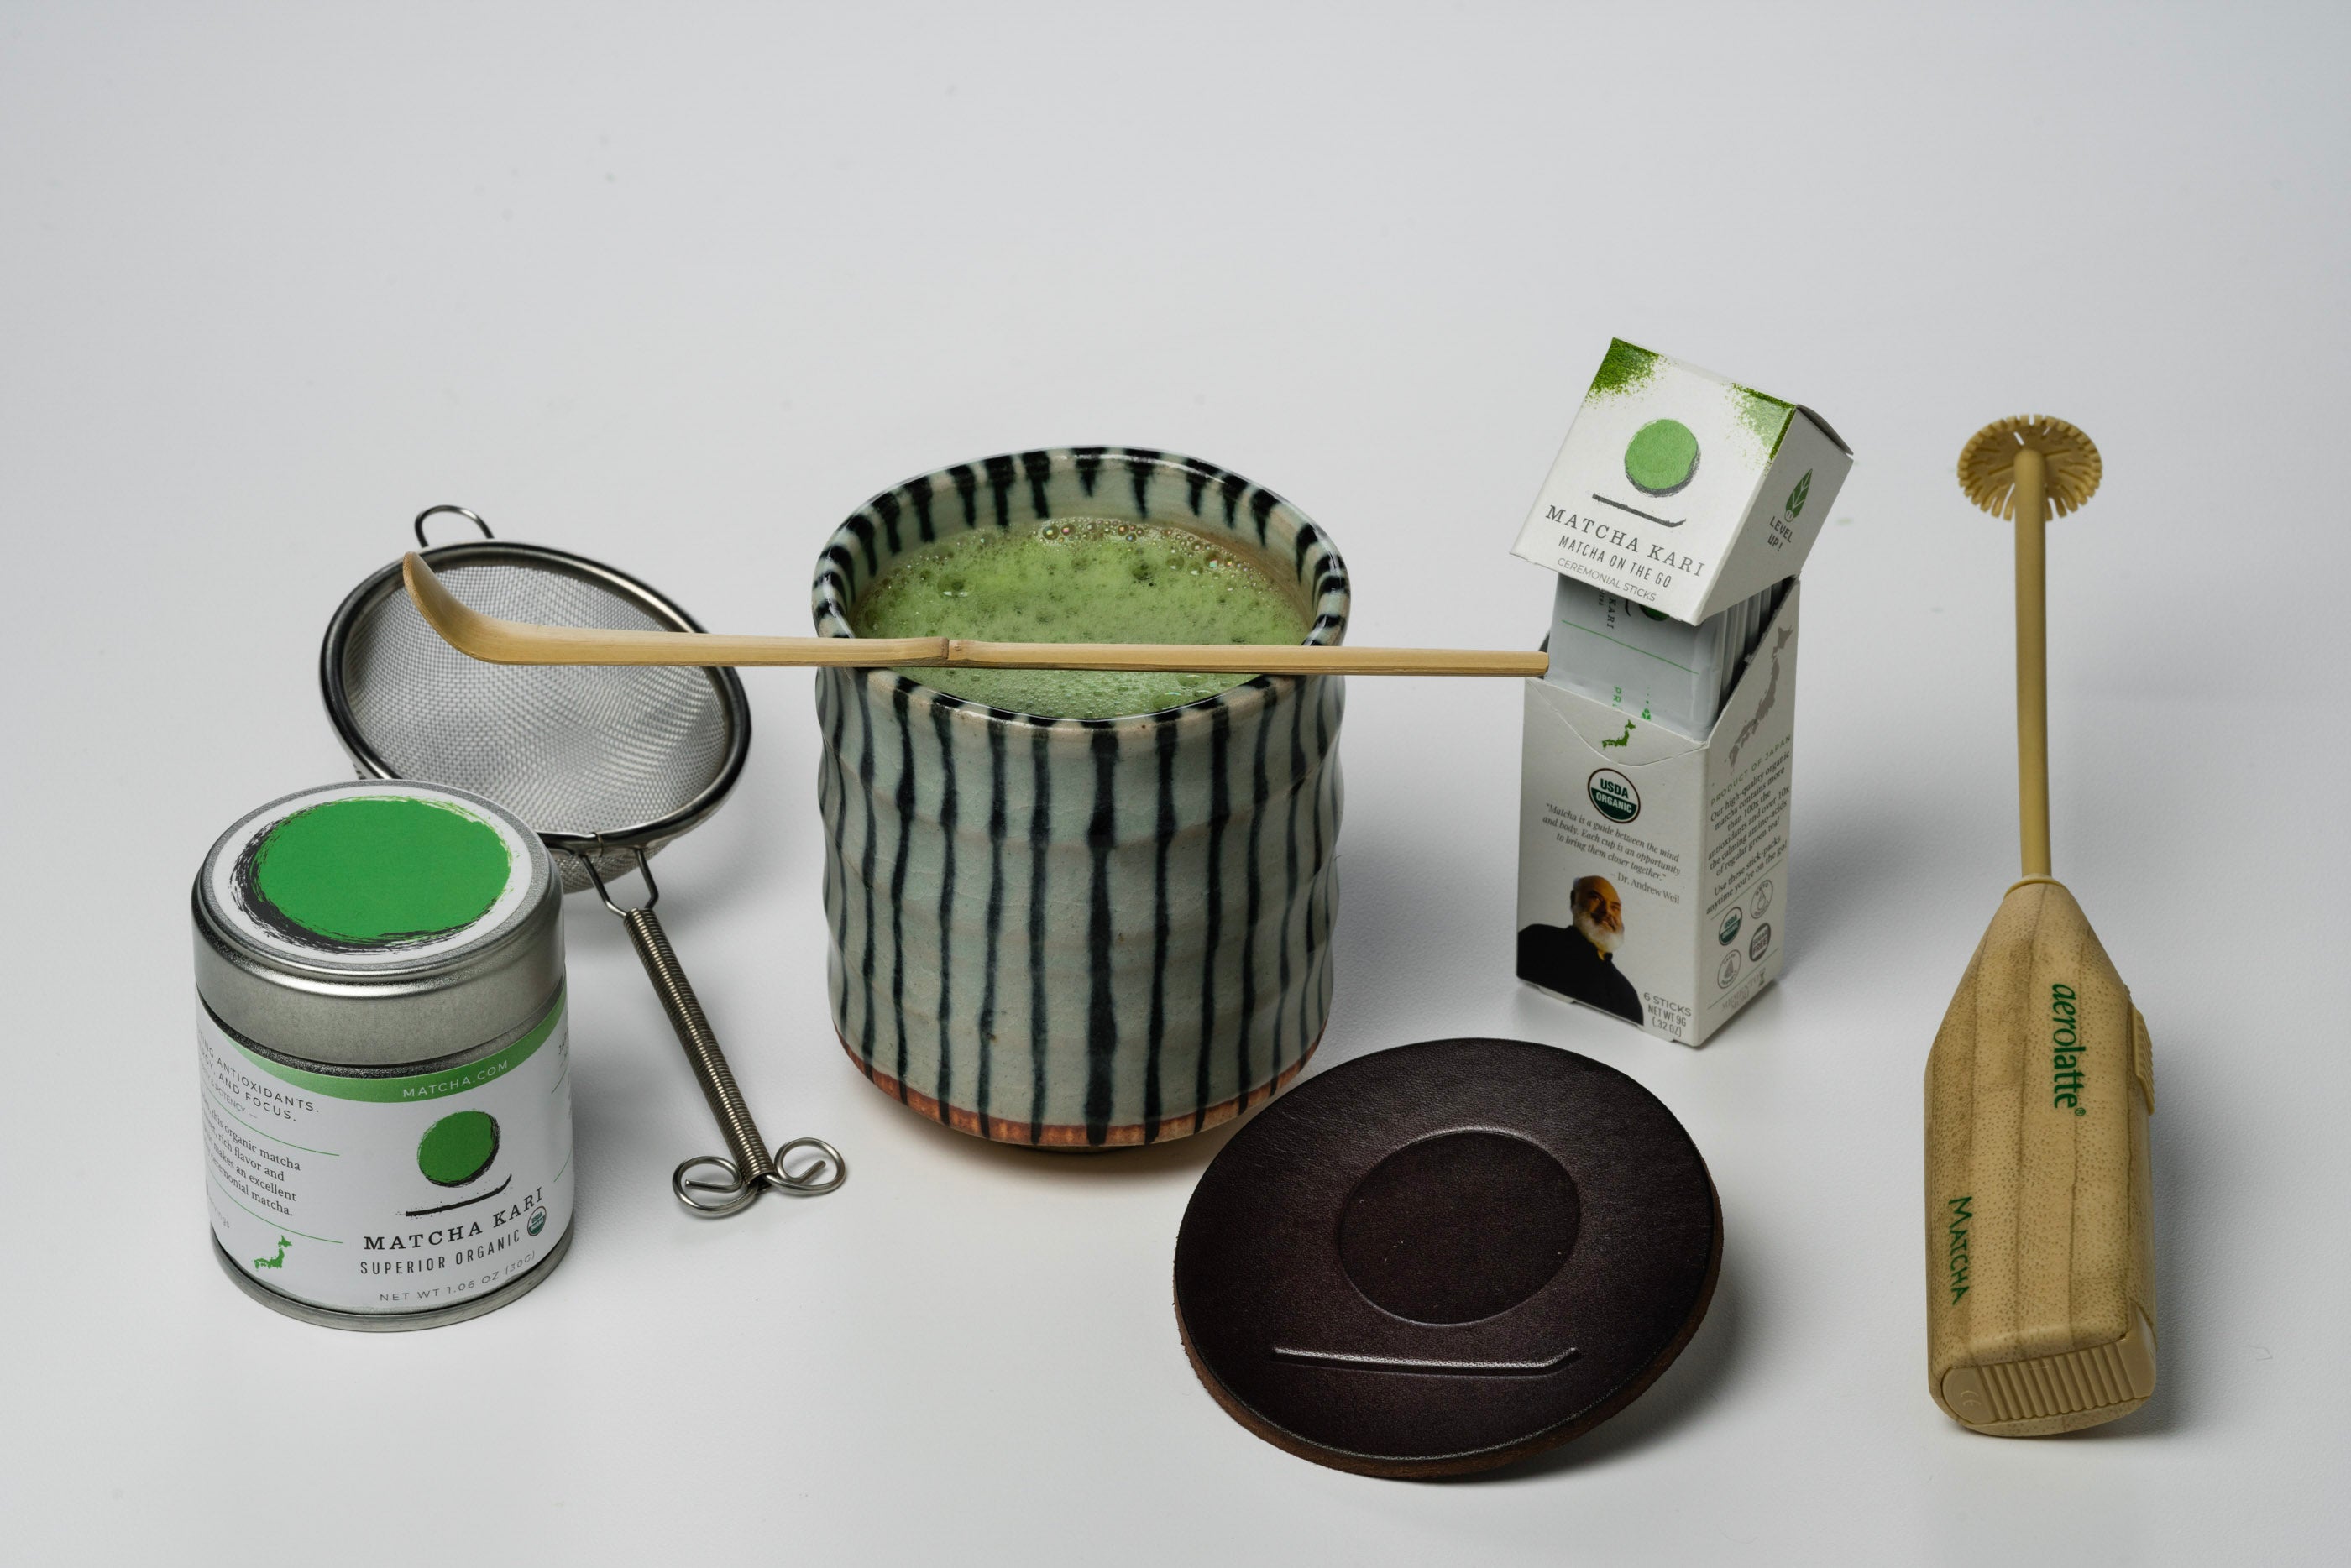 Assorted High – Grade Ceremonial Matcha Sample Kit - Maiko Tea Japan